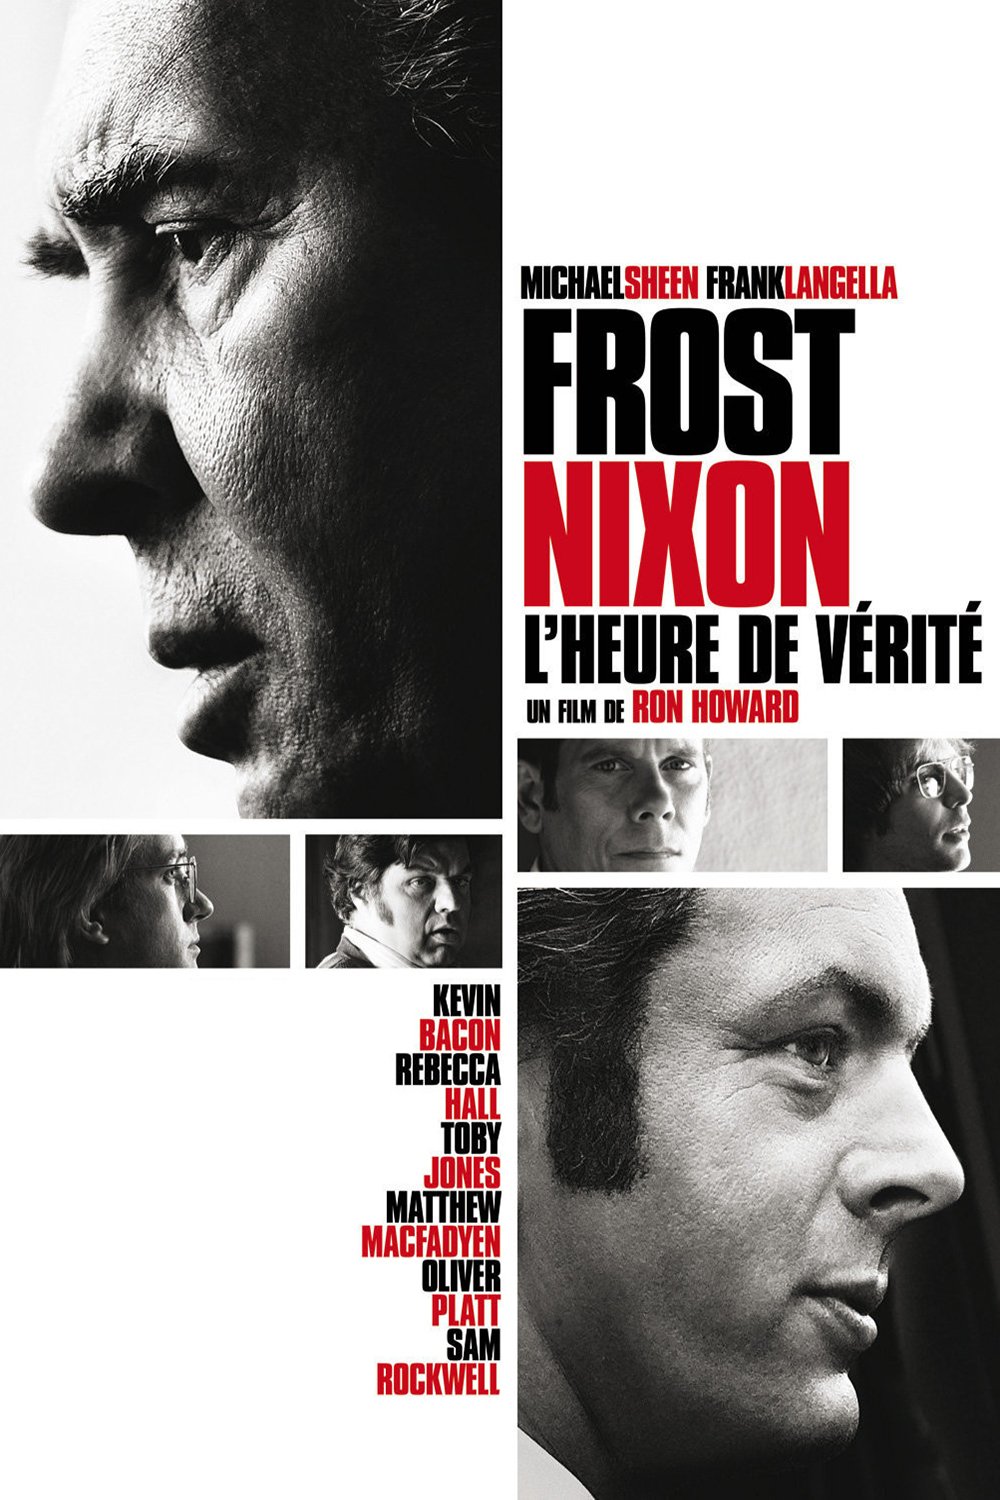 Frost - Nixon, l'heure de vérité